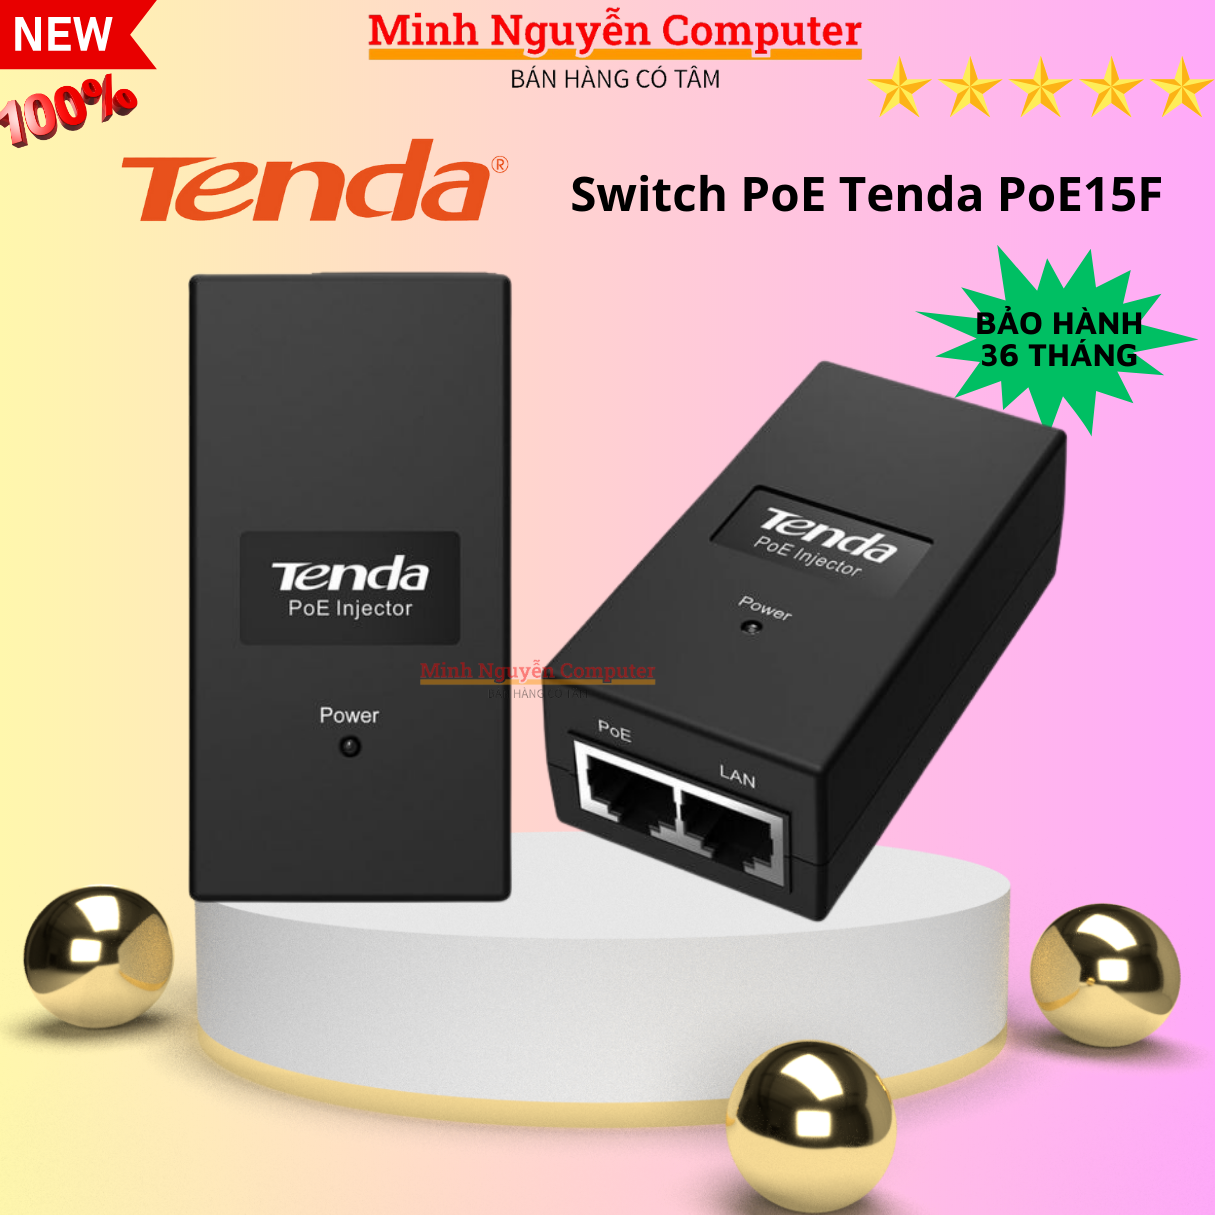 Switch PoE Tenda PoE15F, dùng cho camera poe - Hàng Chính Hãng